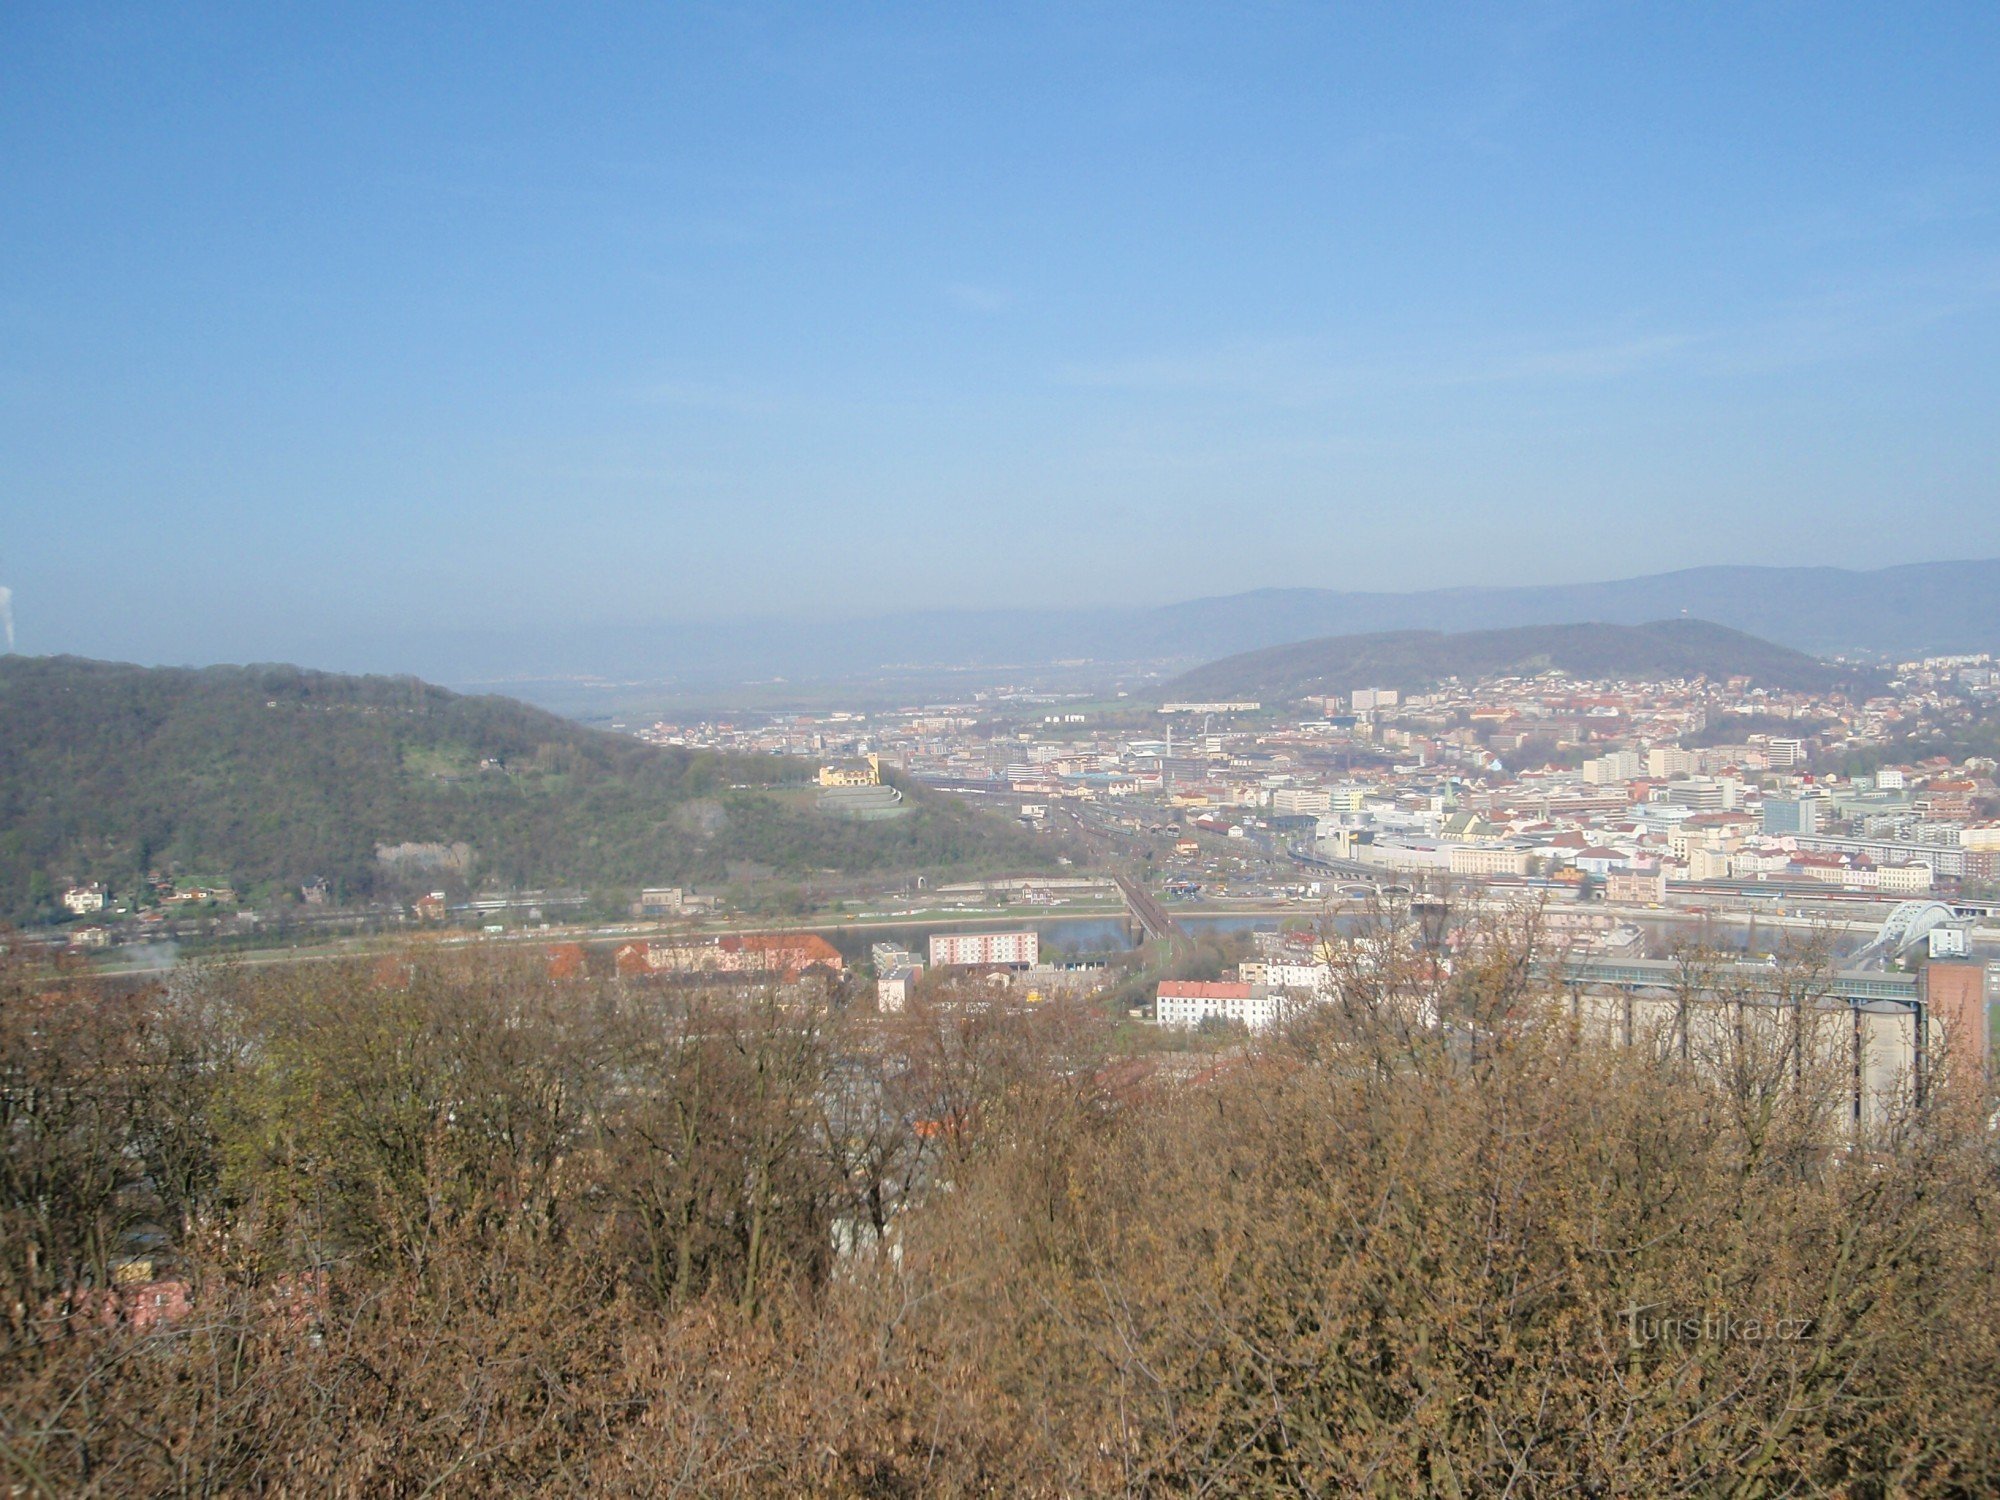 Nhìn từ quan điểm Ústí, trên ngọn đồi bên trái, tòa nhà màu vàng, lâu đài Větruše